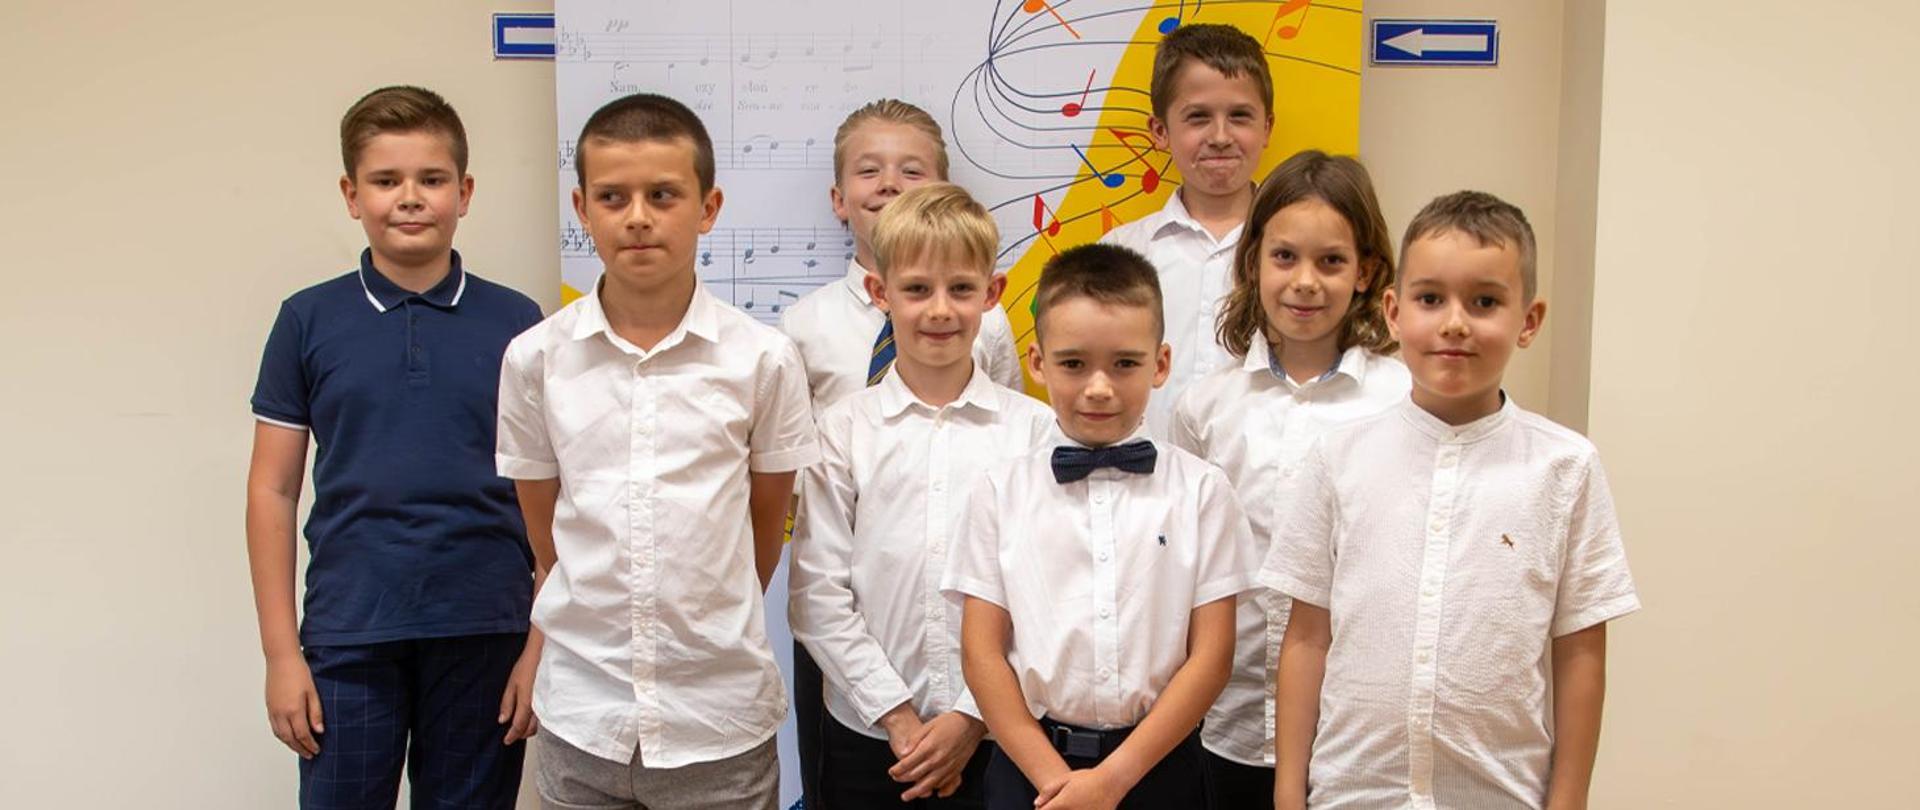 Na zdjęciu 8 chłopców stojących na tle baneru szkolnego.